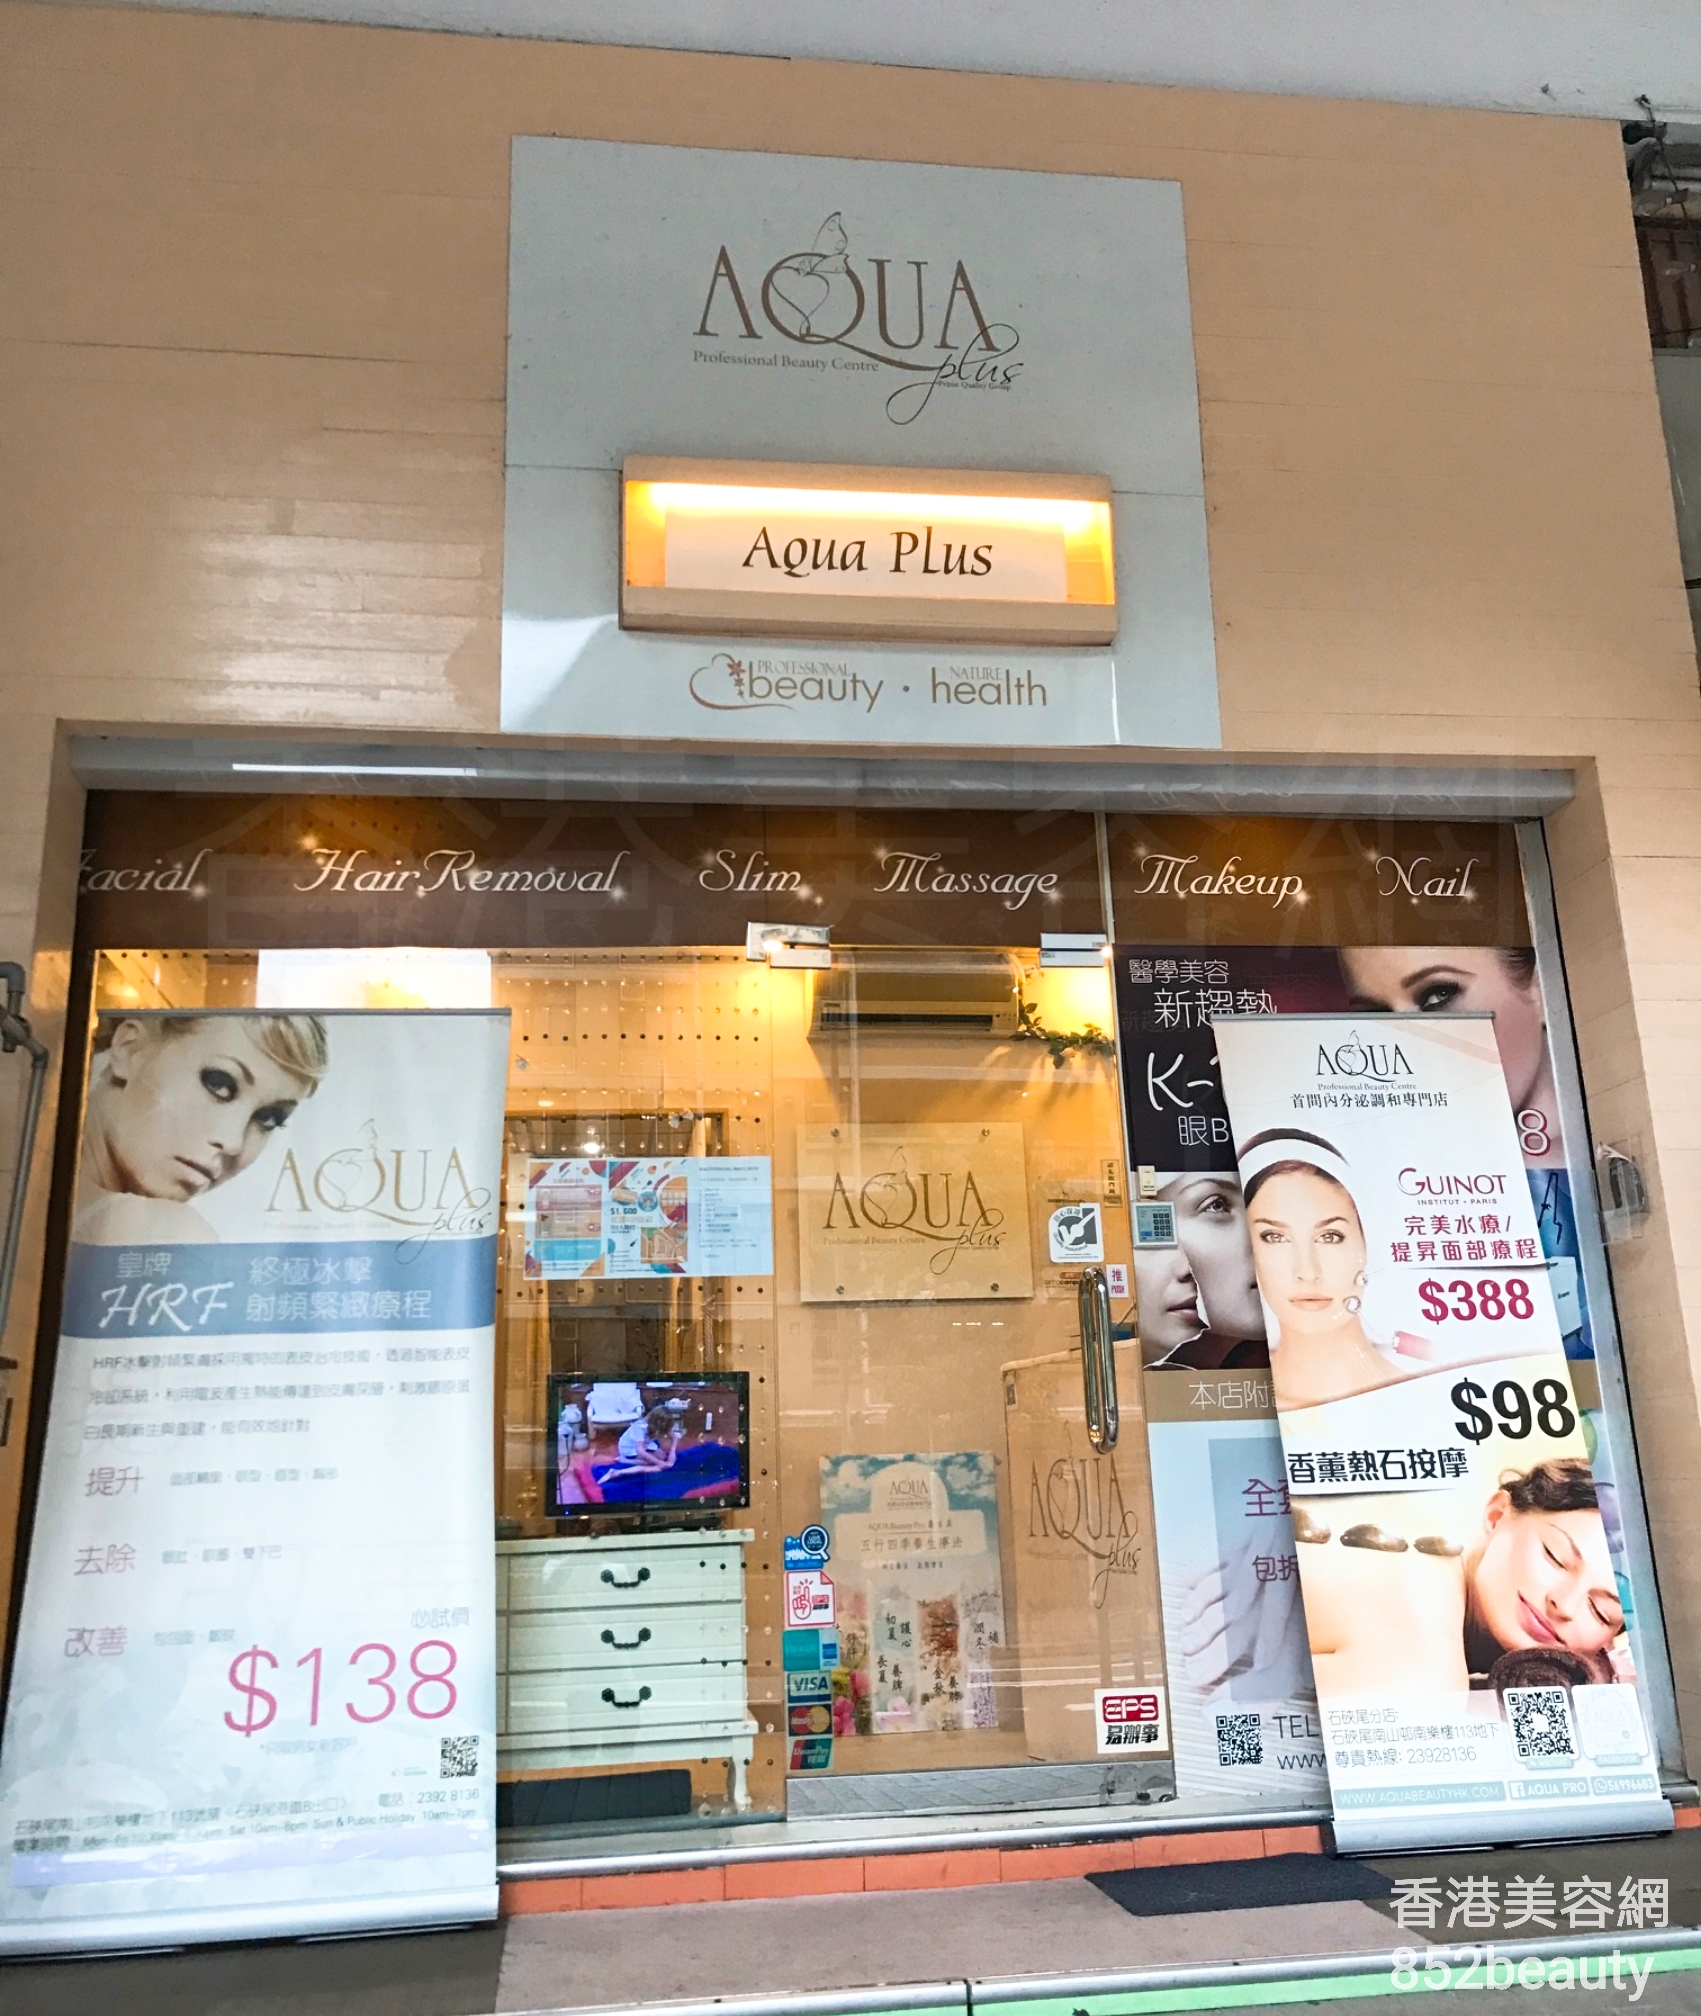 光學美容: AQUA Professional Beauty Centre (石硤尾分店)